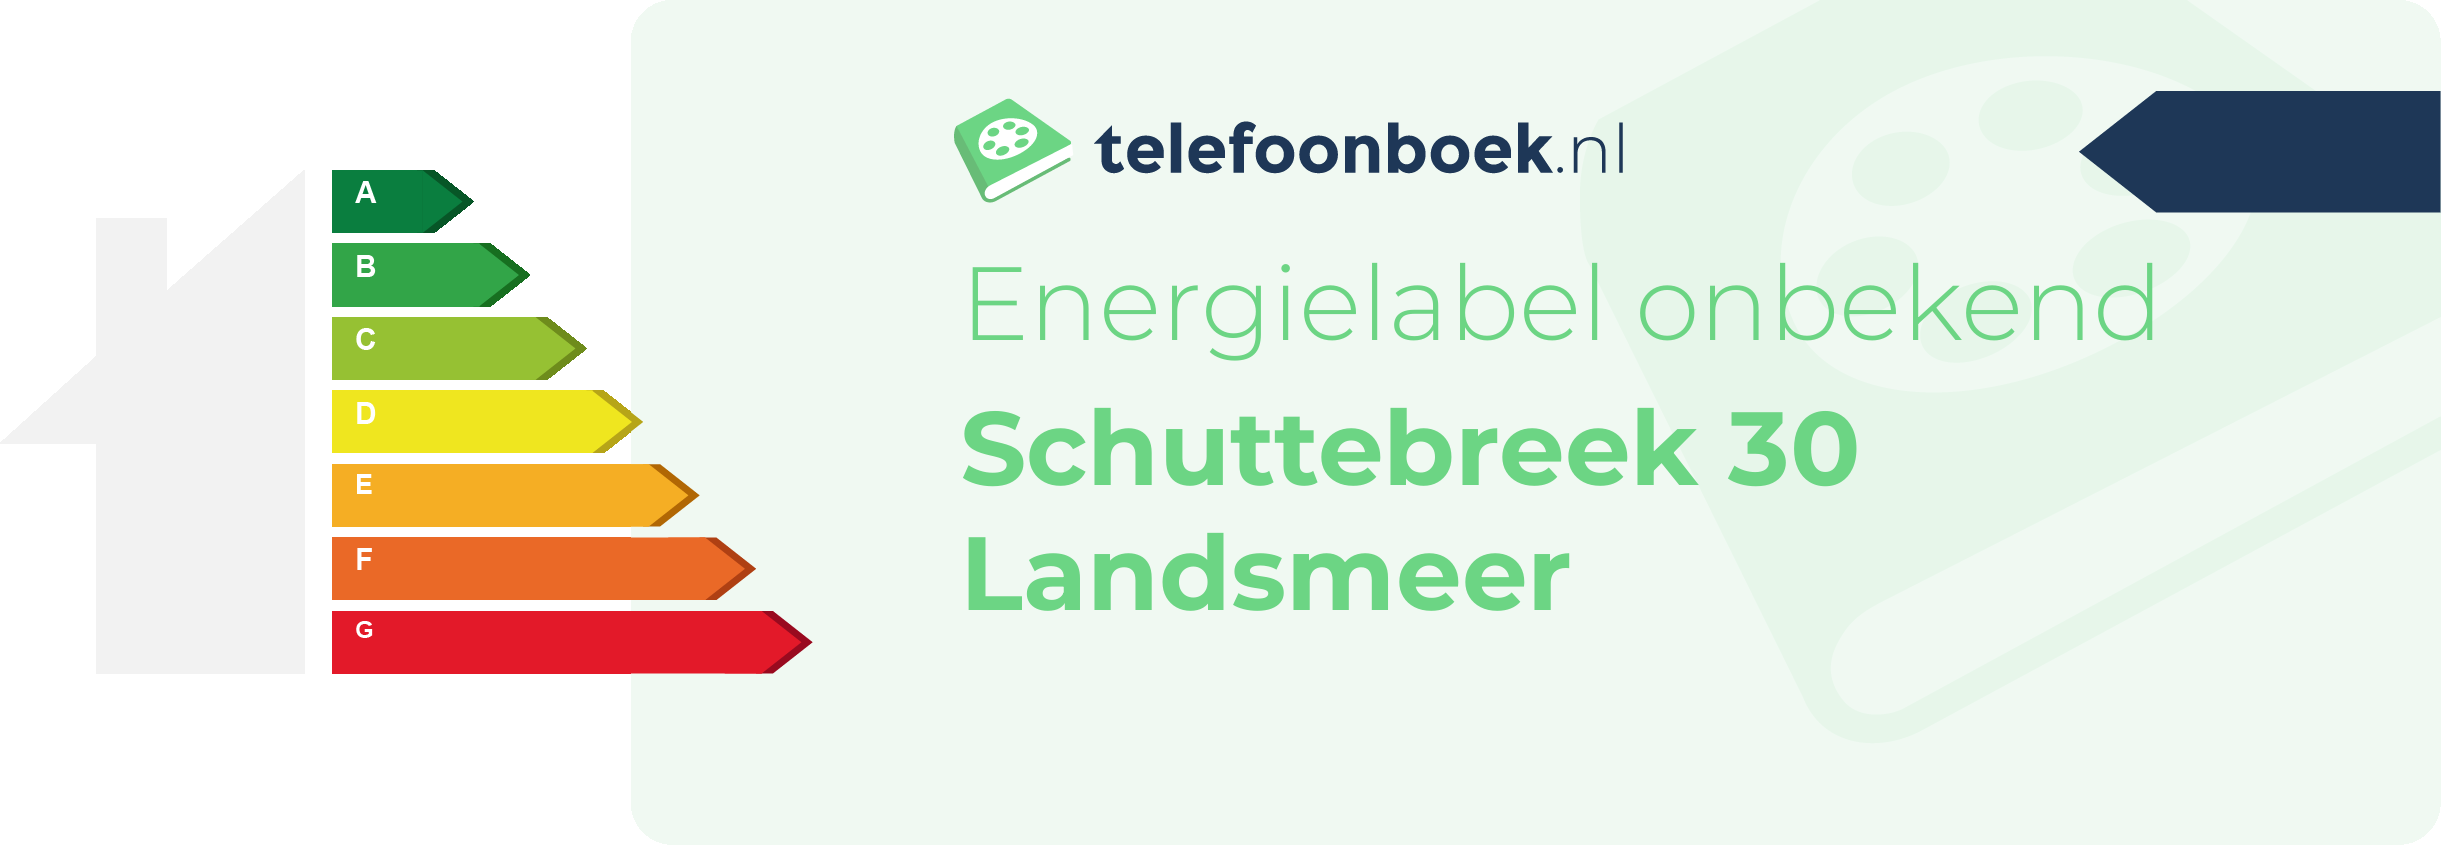 Energielabel Schuttebreek 30 Landsmeer